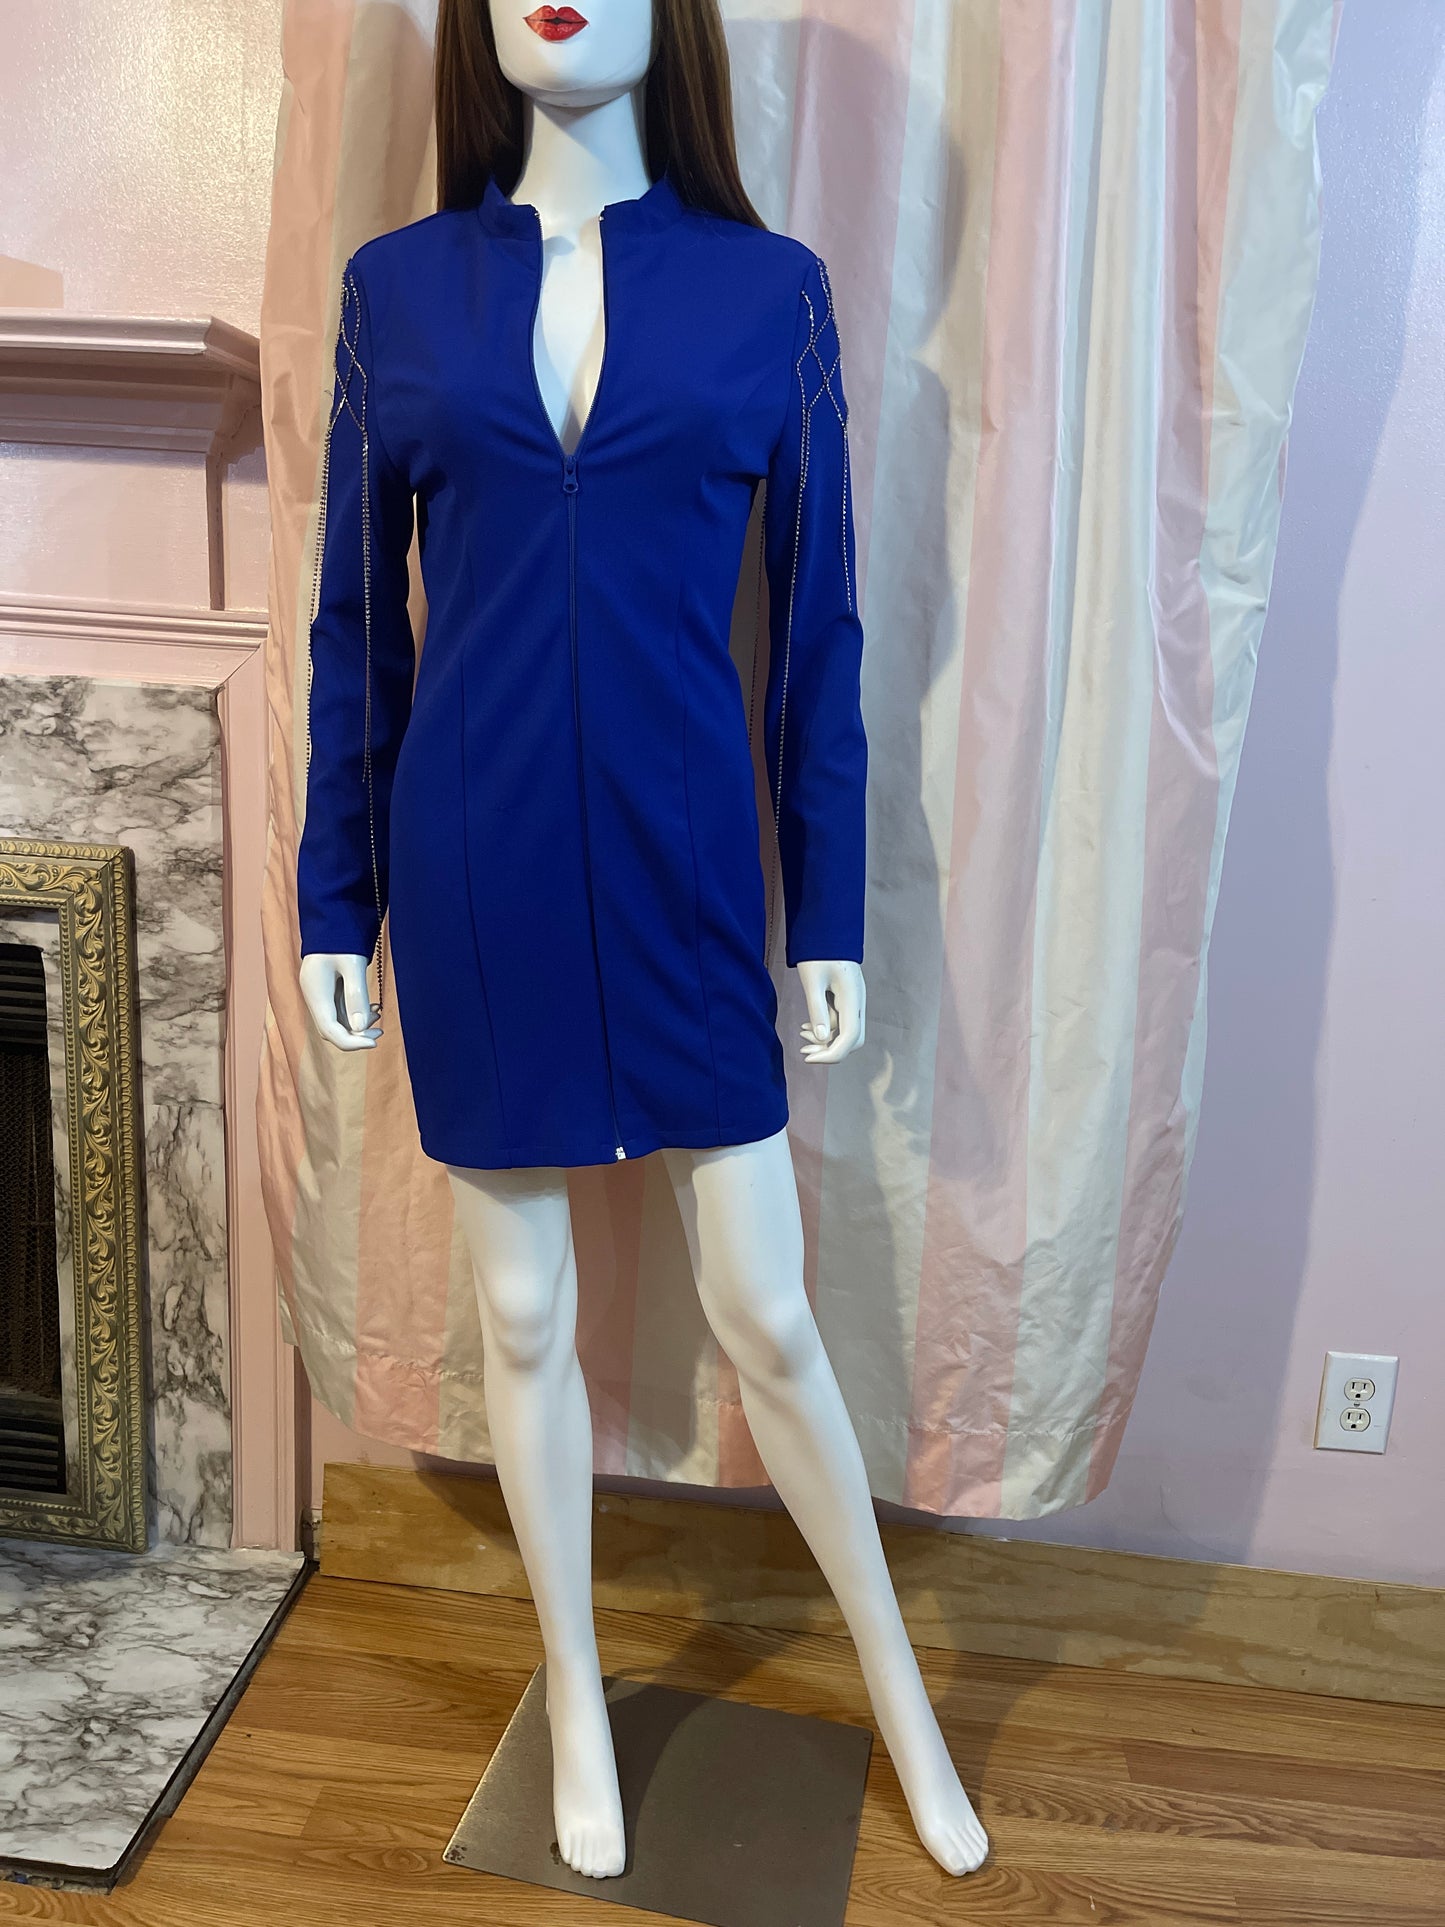 Vintage Royal Blue zip front coat dress